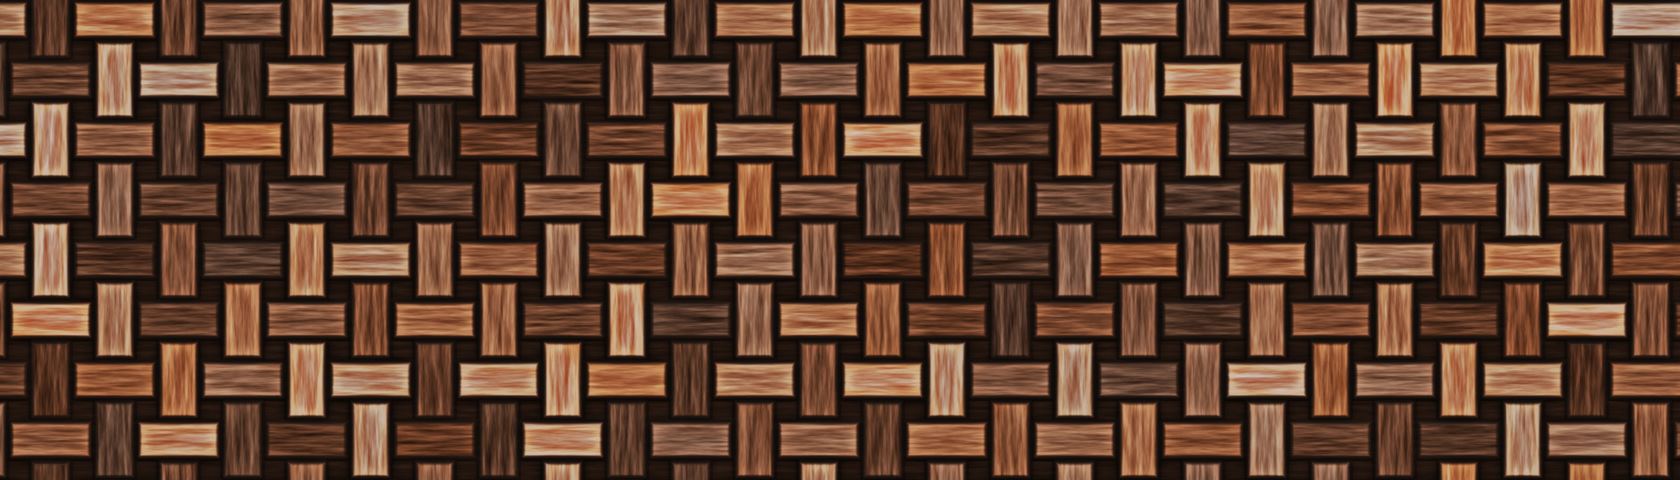 Woven Wood